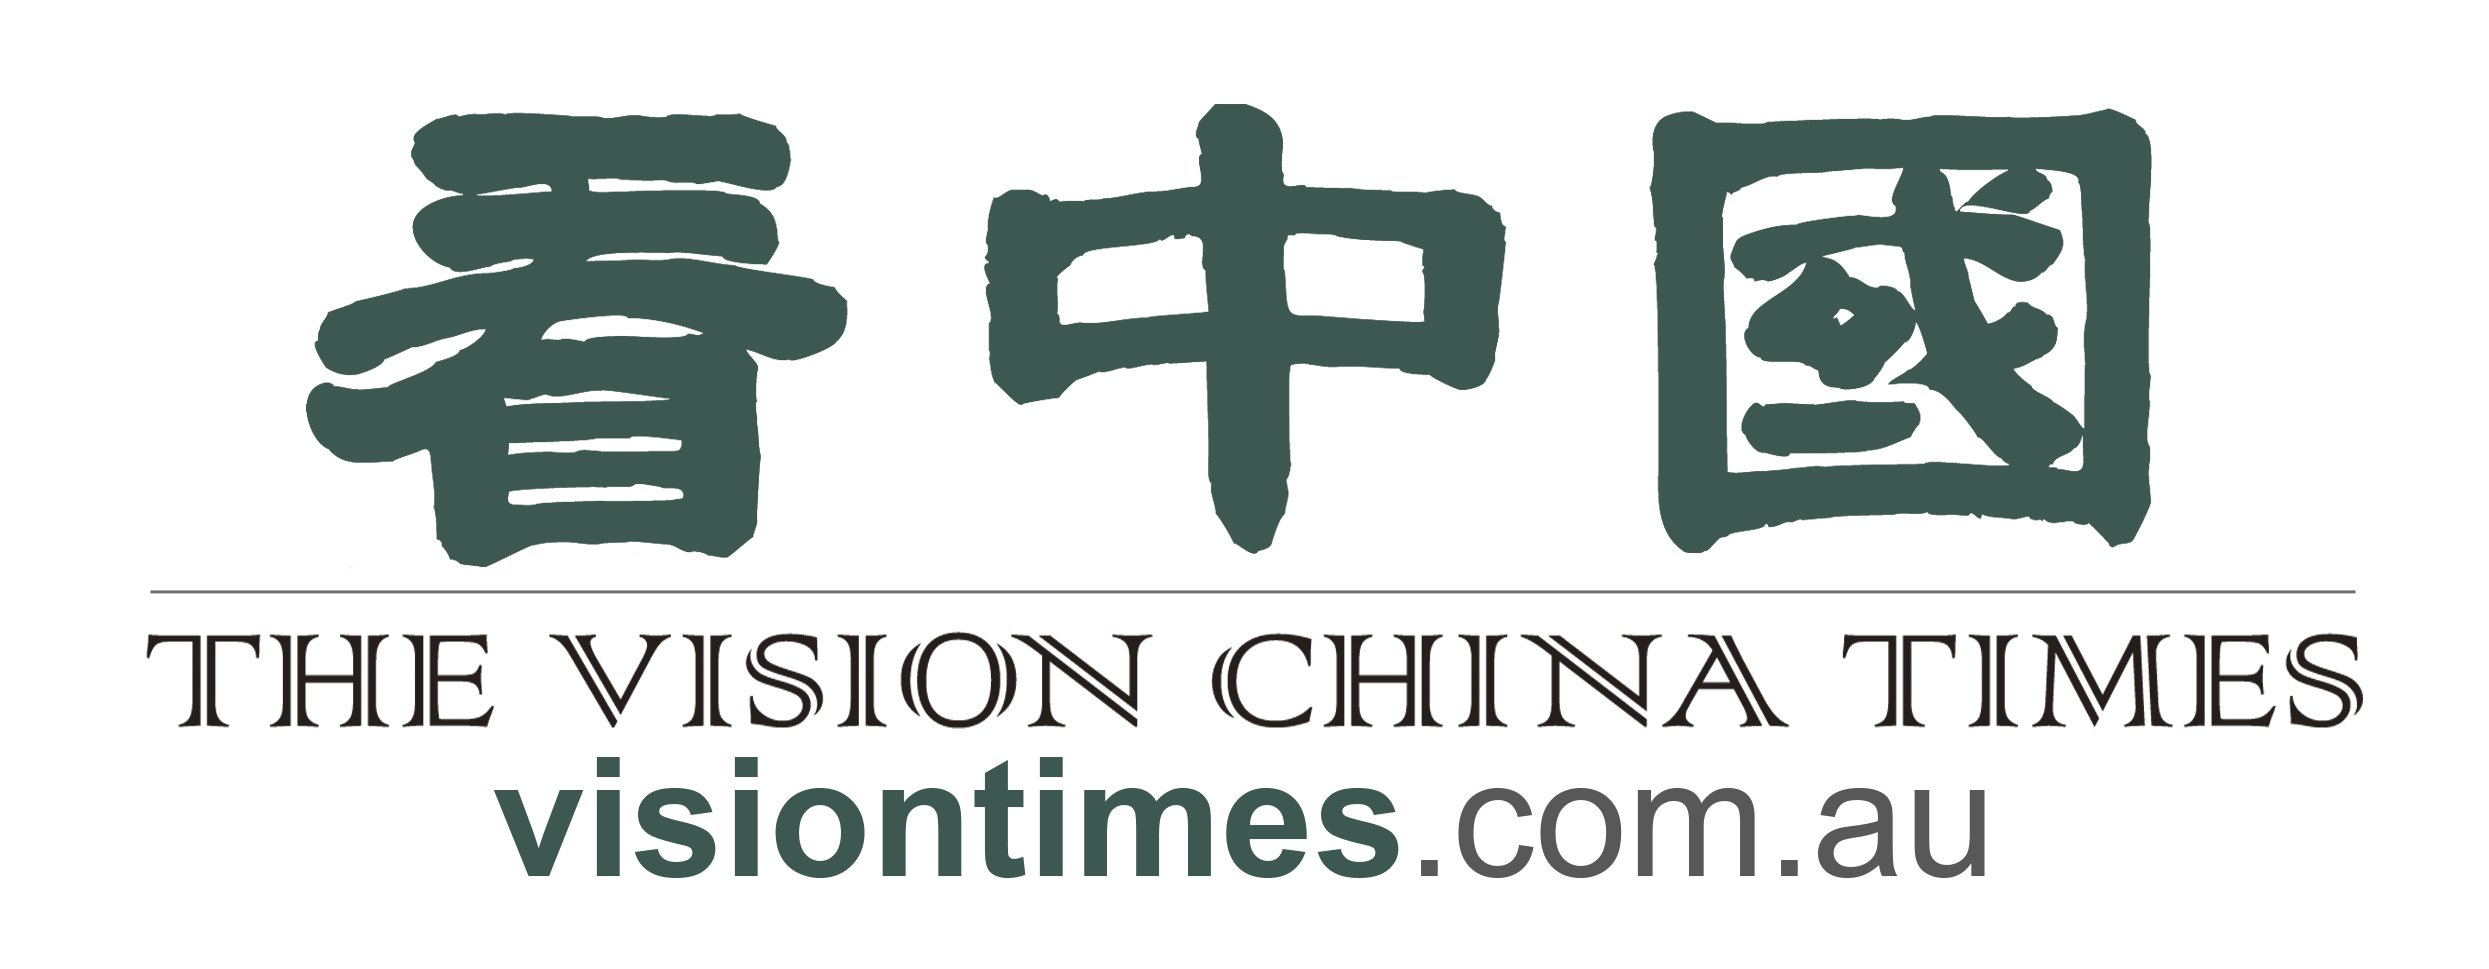 The Vision China Times logo